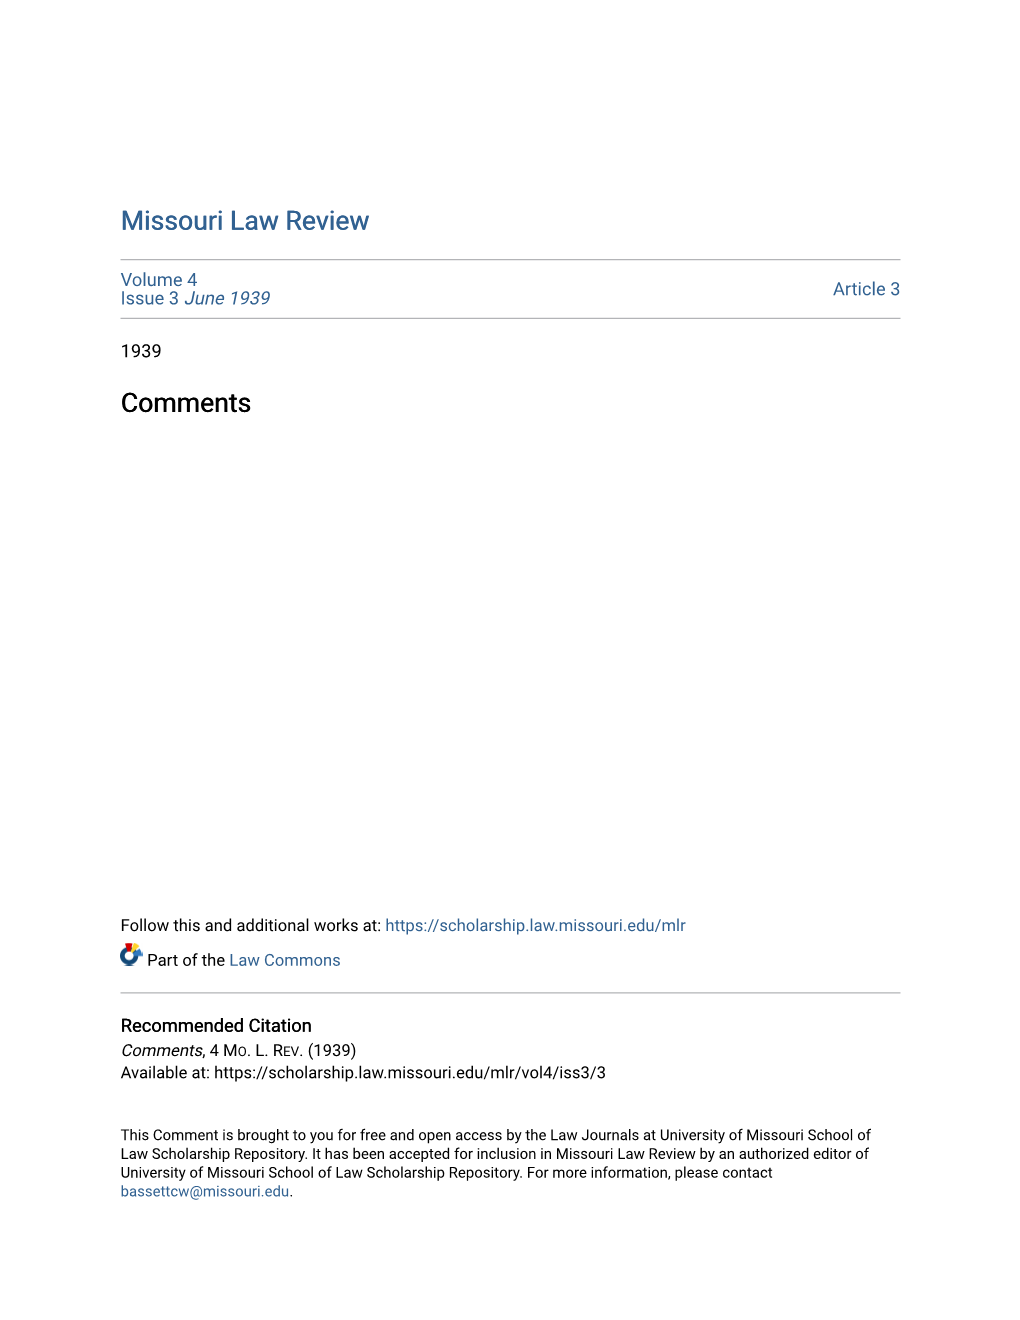 Missouri Law Review Comments